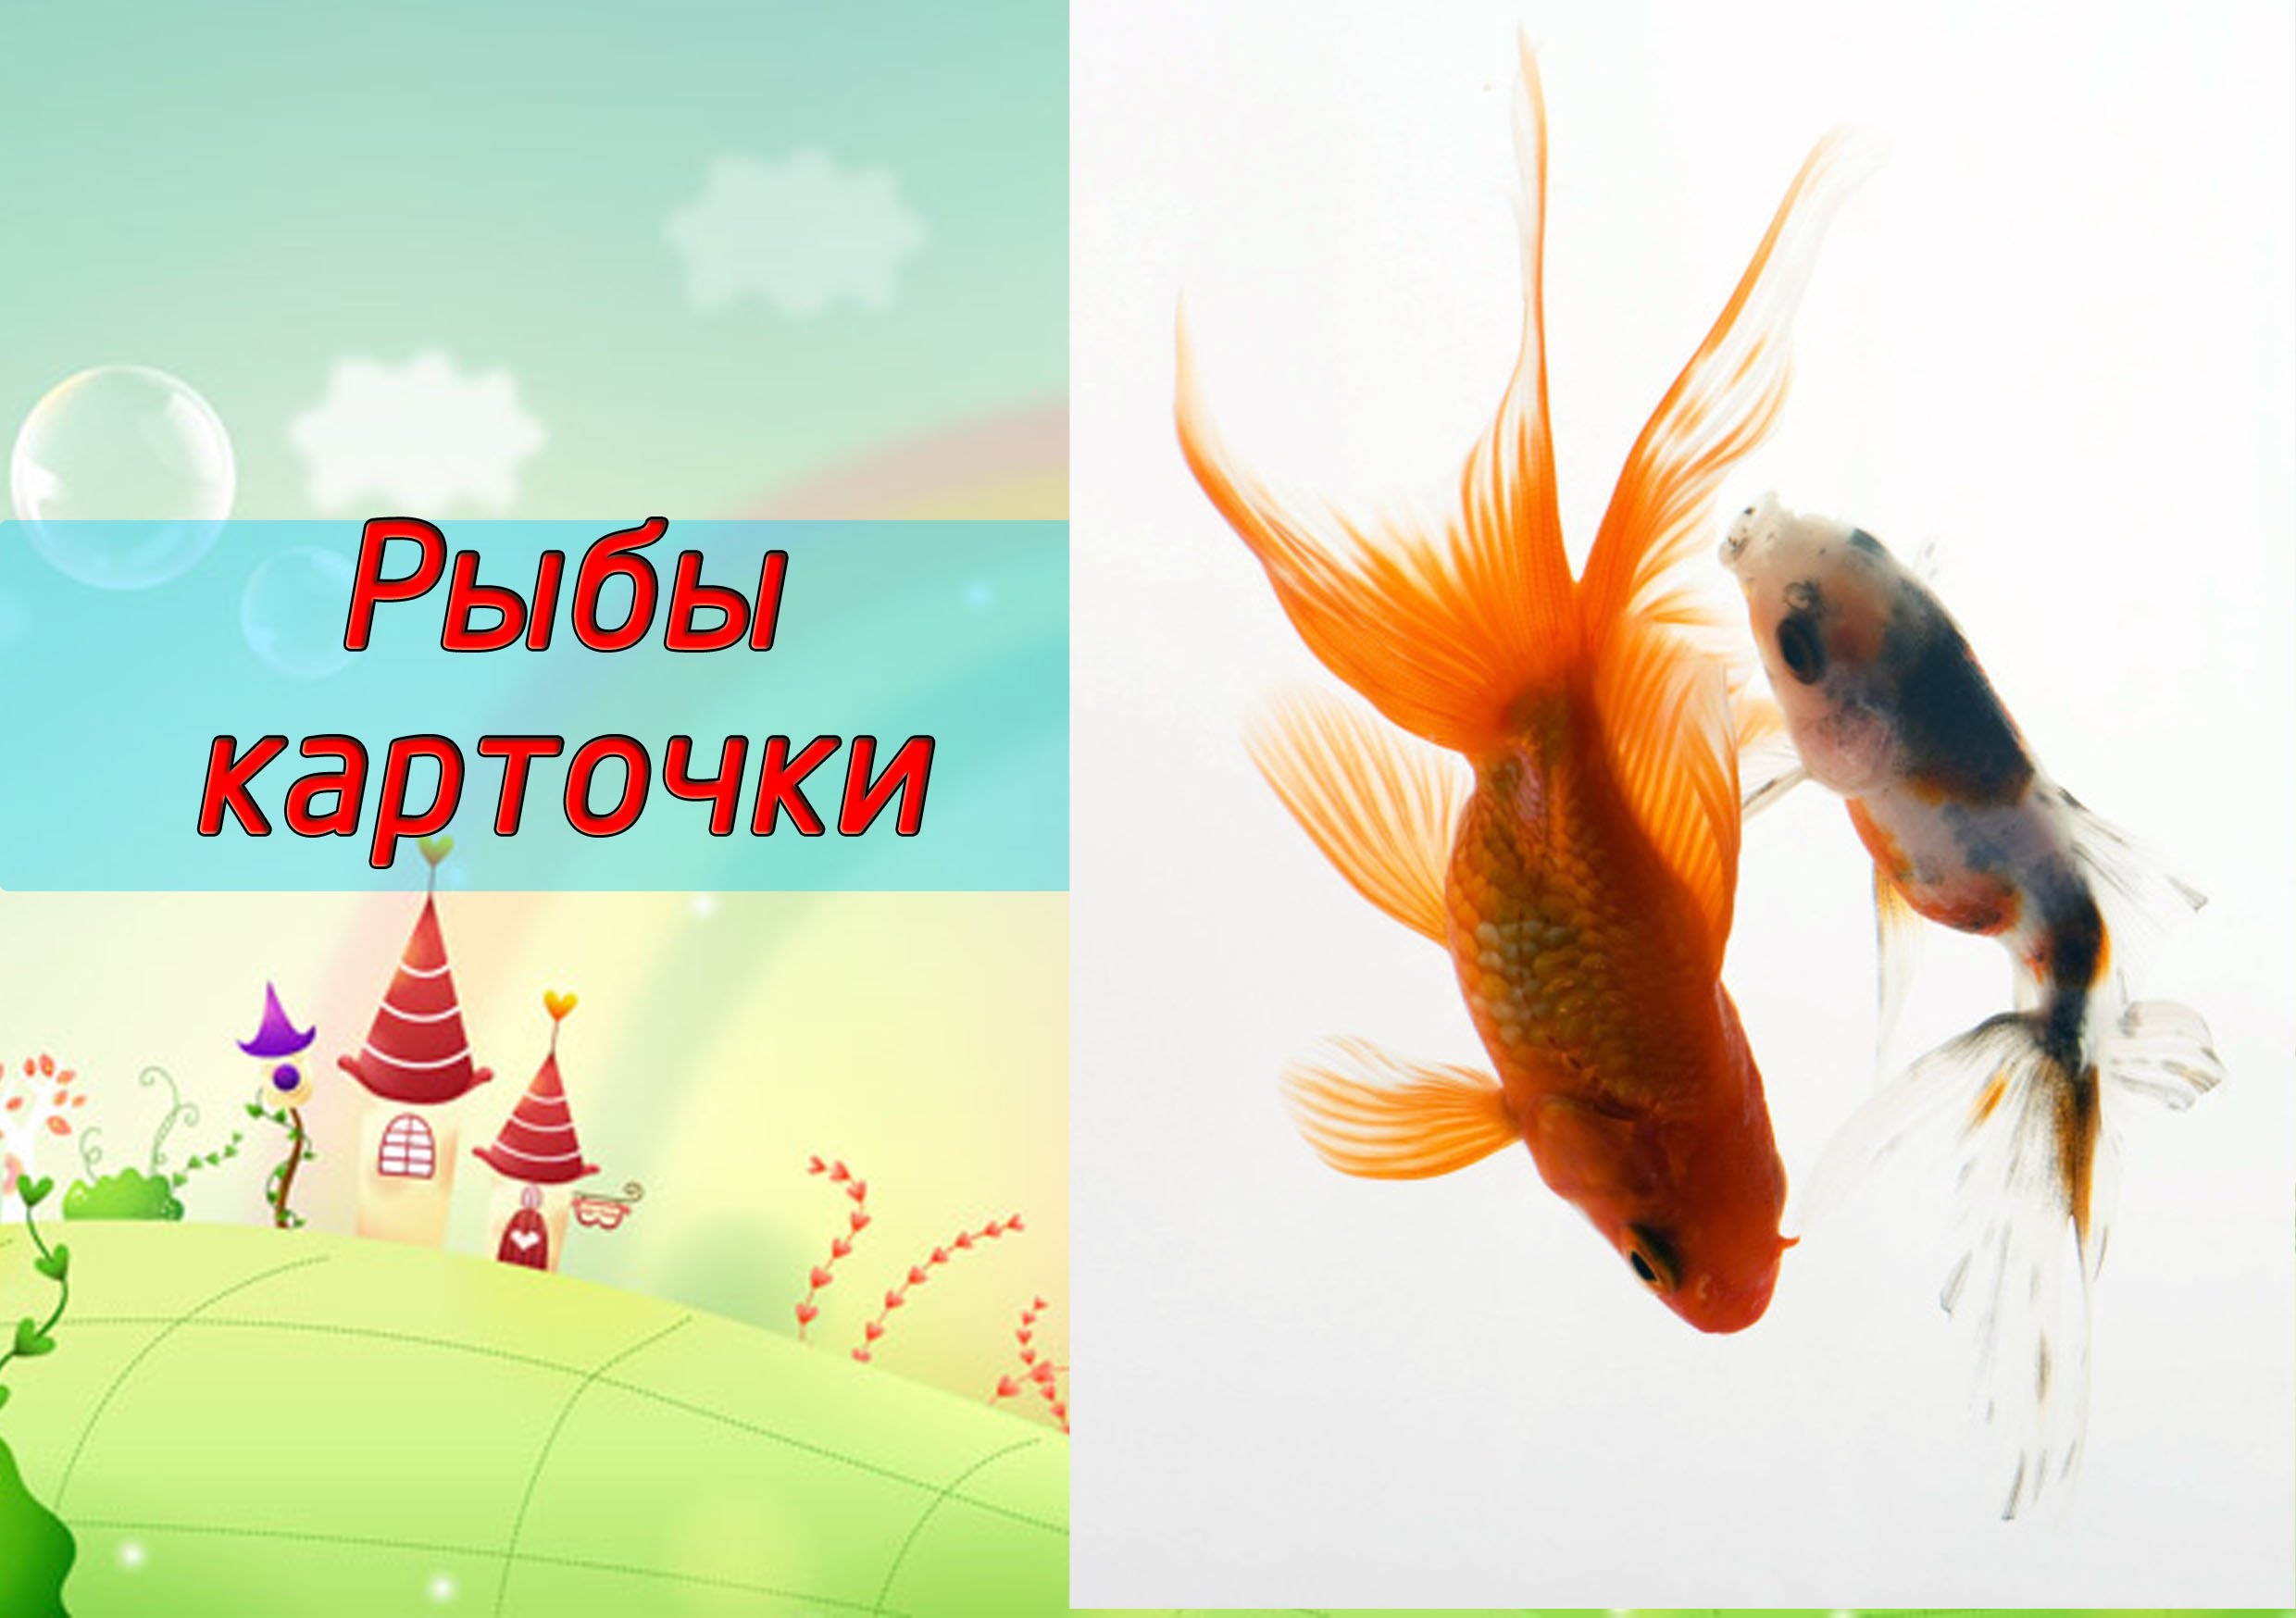 Картинки для детей рыбы для детского сада (19)